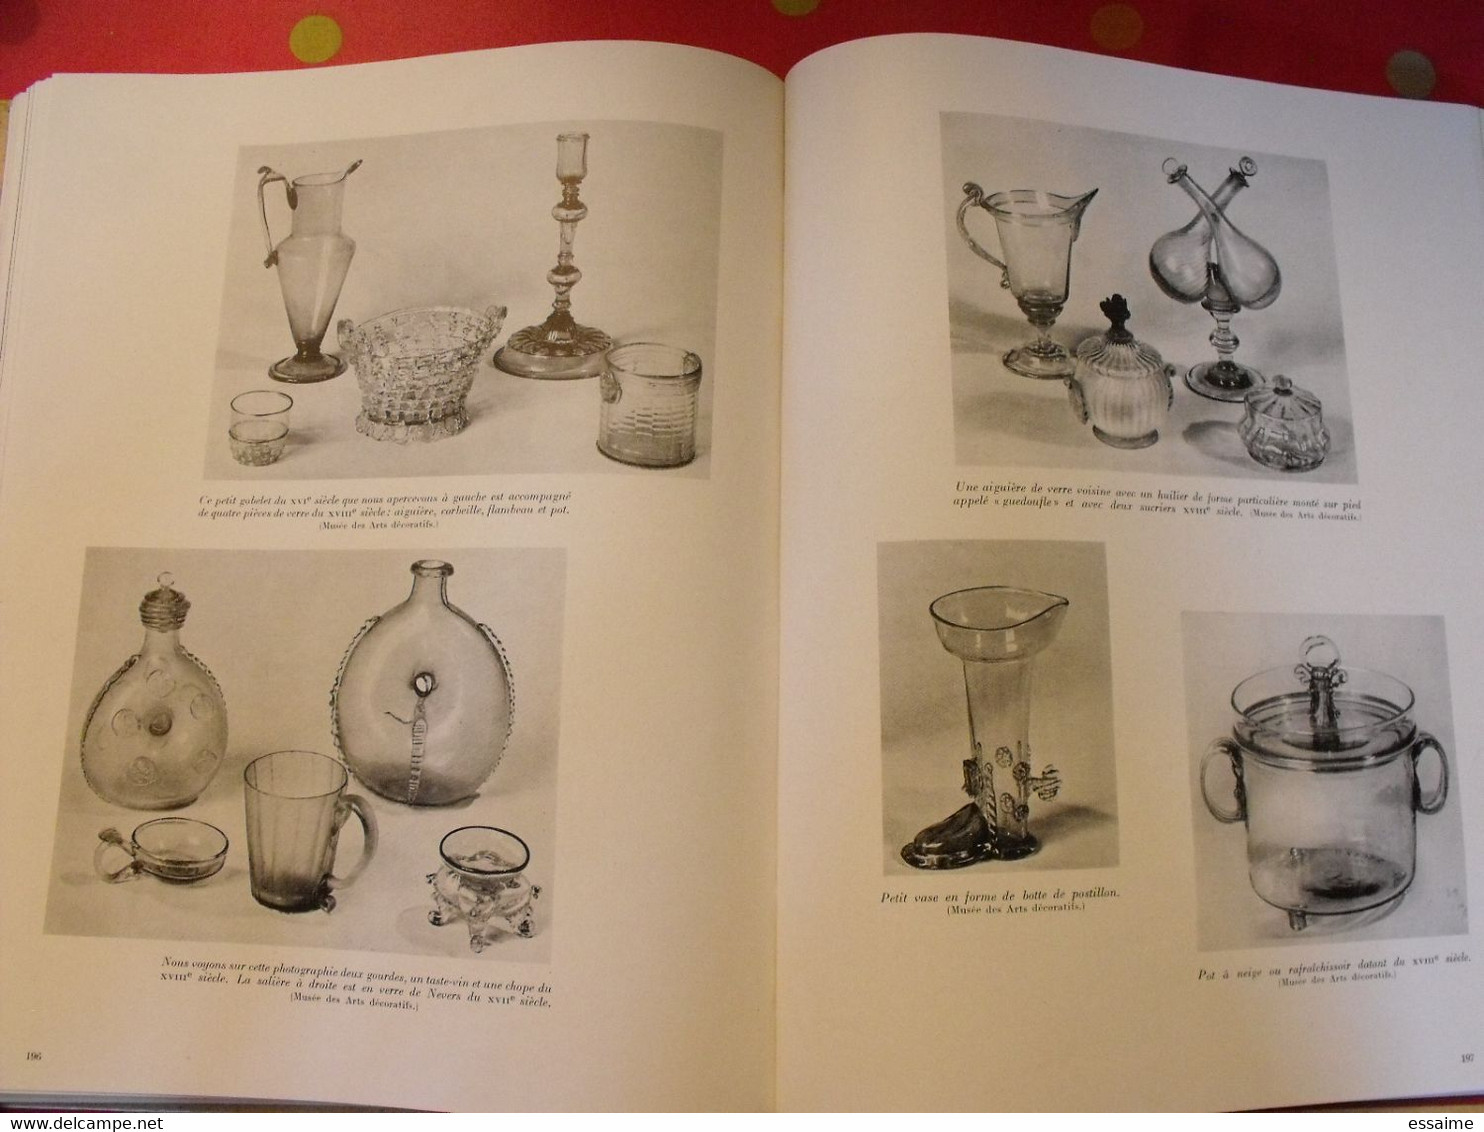 styles de France "objets et collections". plaisir de france vers 1950-60. très illustré. beau livre avec emboitage